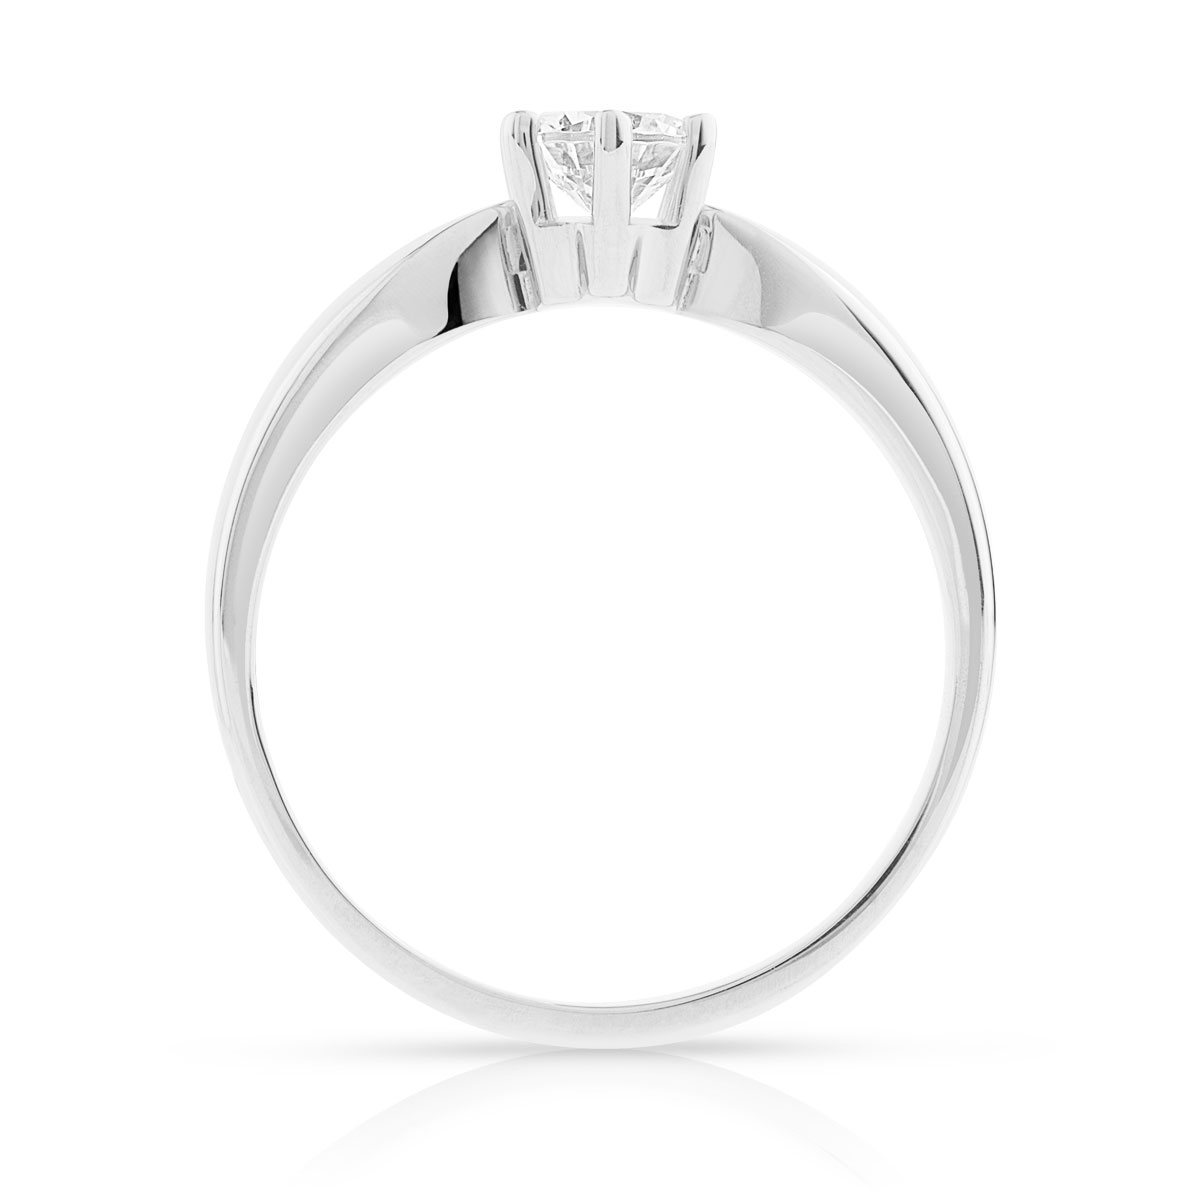 Bague Solitaire or 750 blanc diamant synthétique 0.40 carat - vue 2